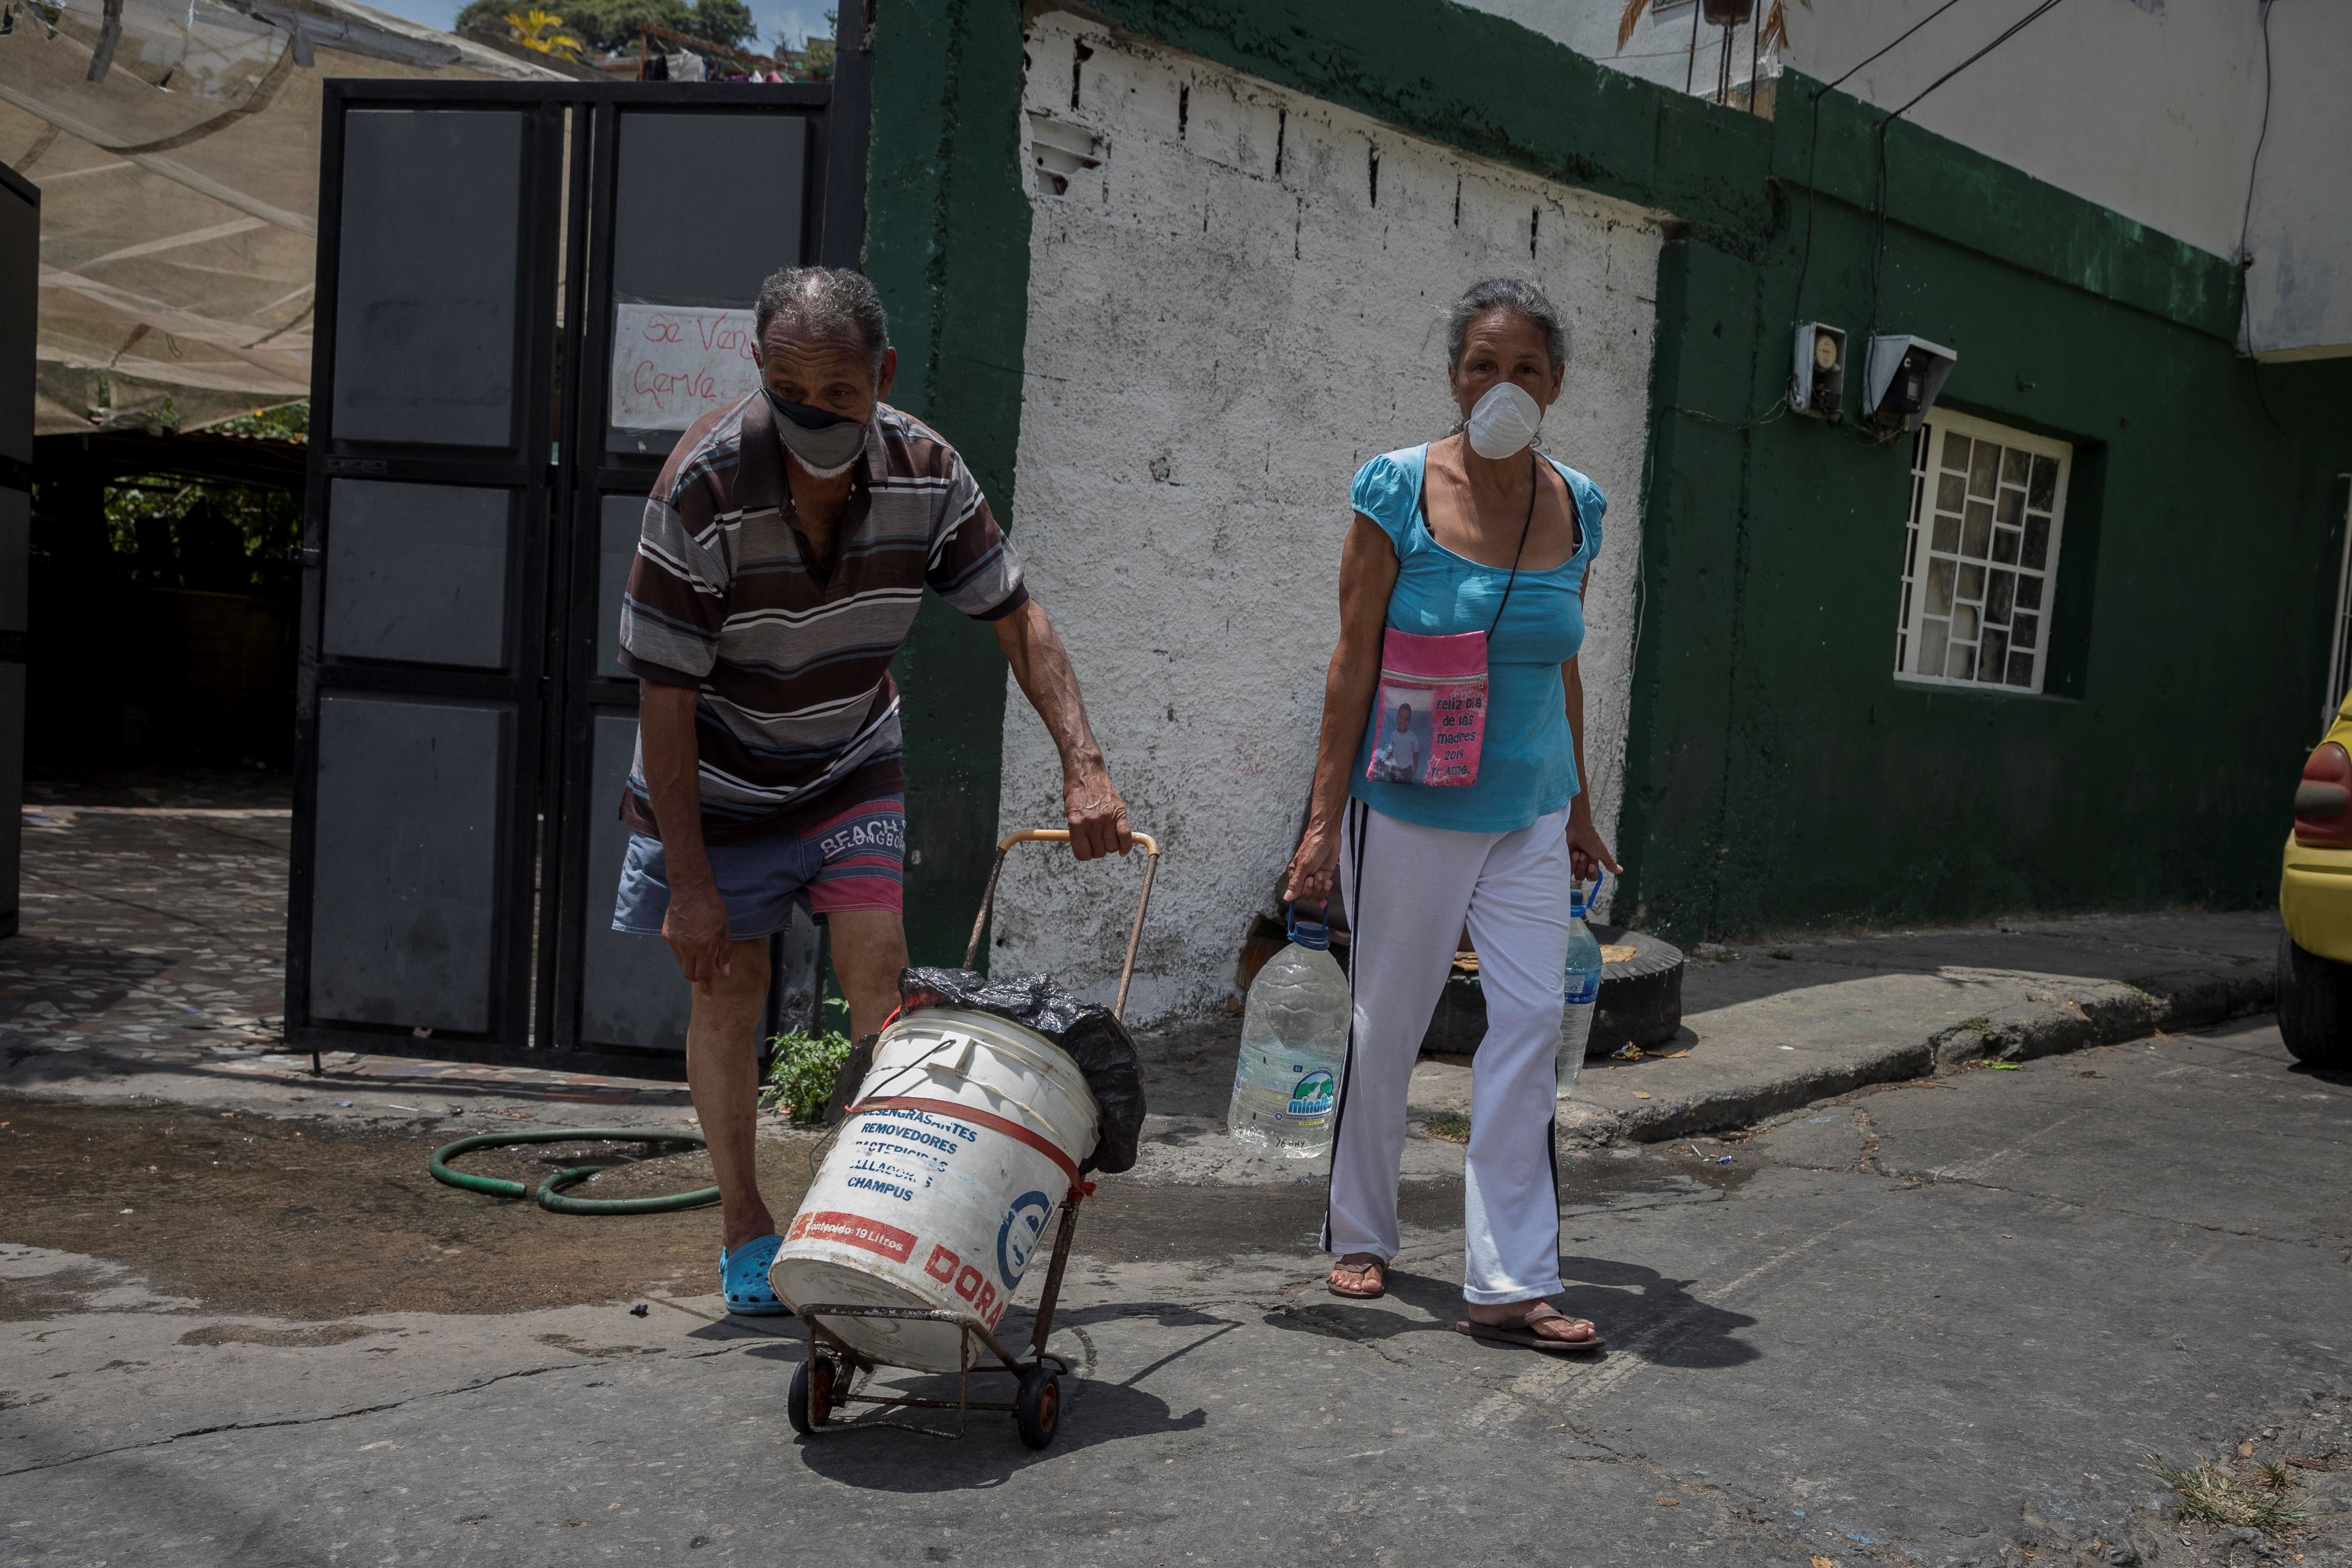 Los venezolanos dicen que los servicios en el país son caros y malos